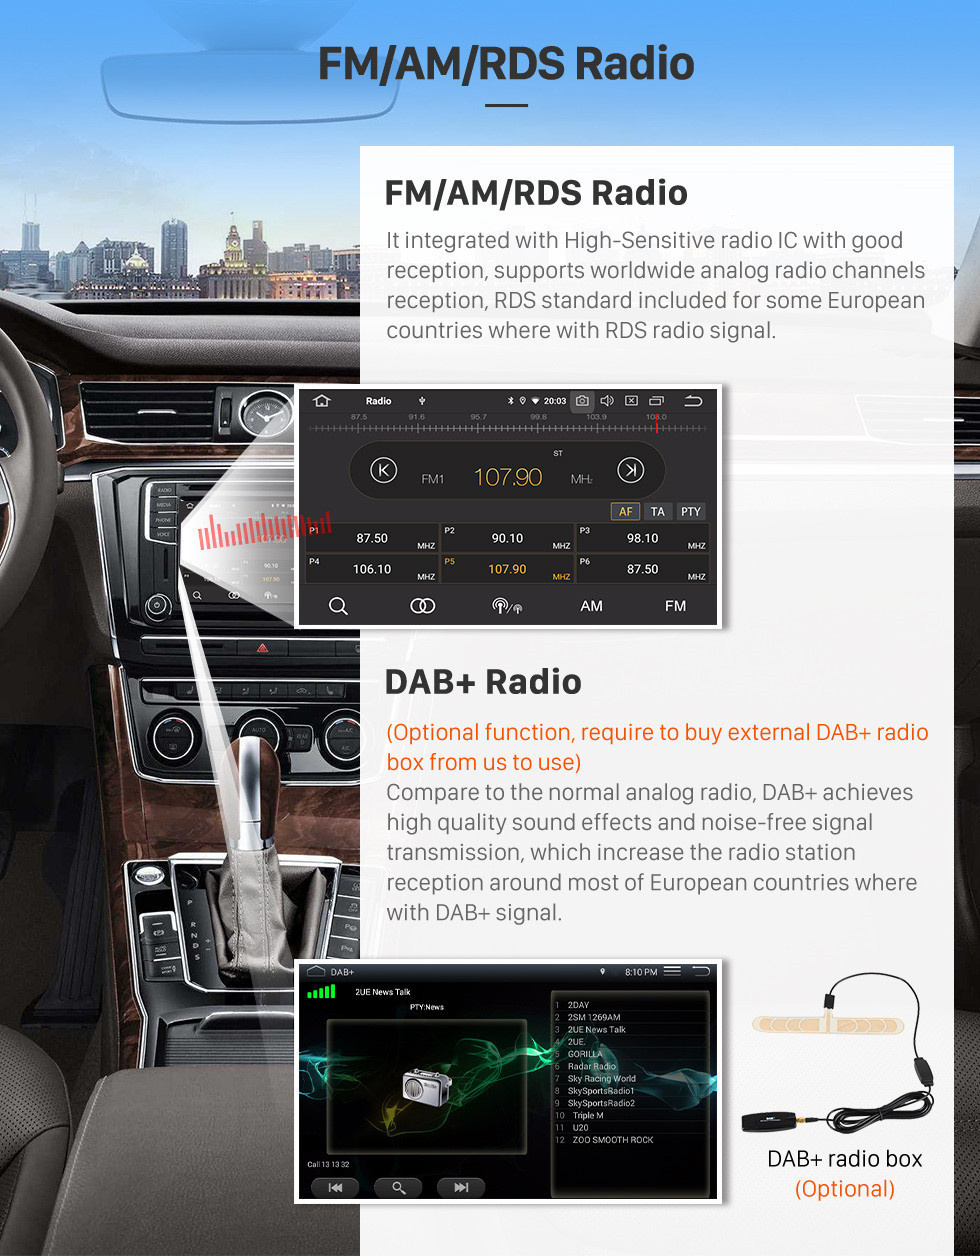 Seicane 2009 Nissan Sylphy Android 11.0 10.1 polegada Navegação GPS Rádio Bluetooth AUX HD Touchscreen USB Carplay suporte TPMS DVR Digital TV Backup camera